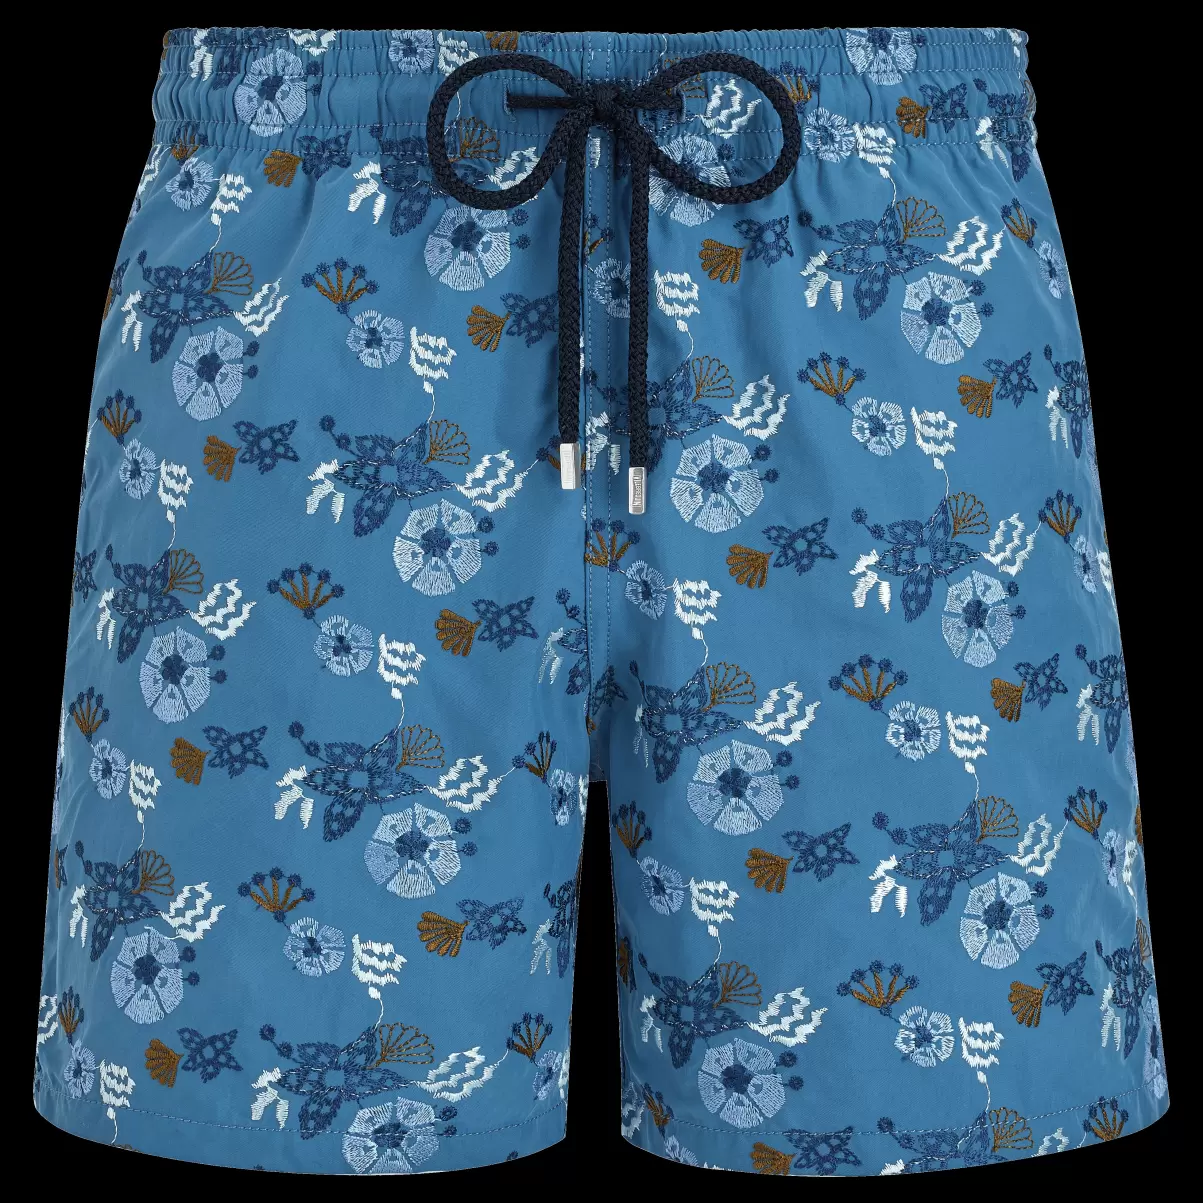 Herren Calanque / Blau Men Swim Shorts Embroidered Flowers And Shells - Limited Edition Bestellung Stickerei Vilebrequin